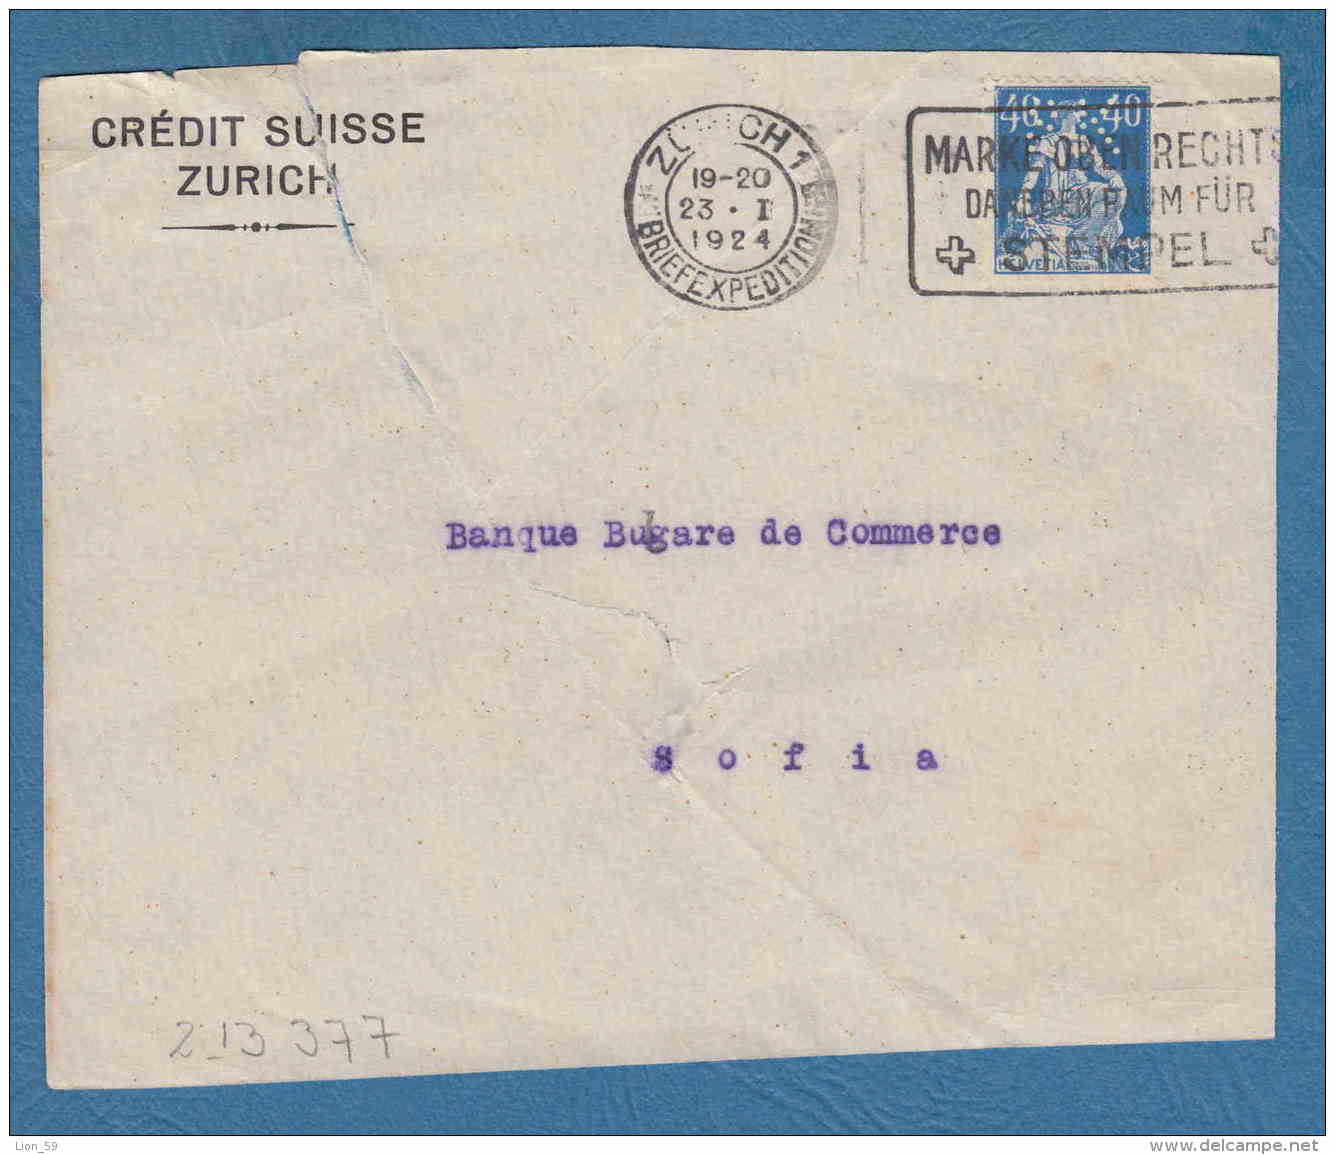 213377 / 1924 - 40 C. - CREDIT SUISSE ZURICH - Perfin Perfores Perforiert Gezähnt Perforati Switzerland Suisse Schweiz - Perforés